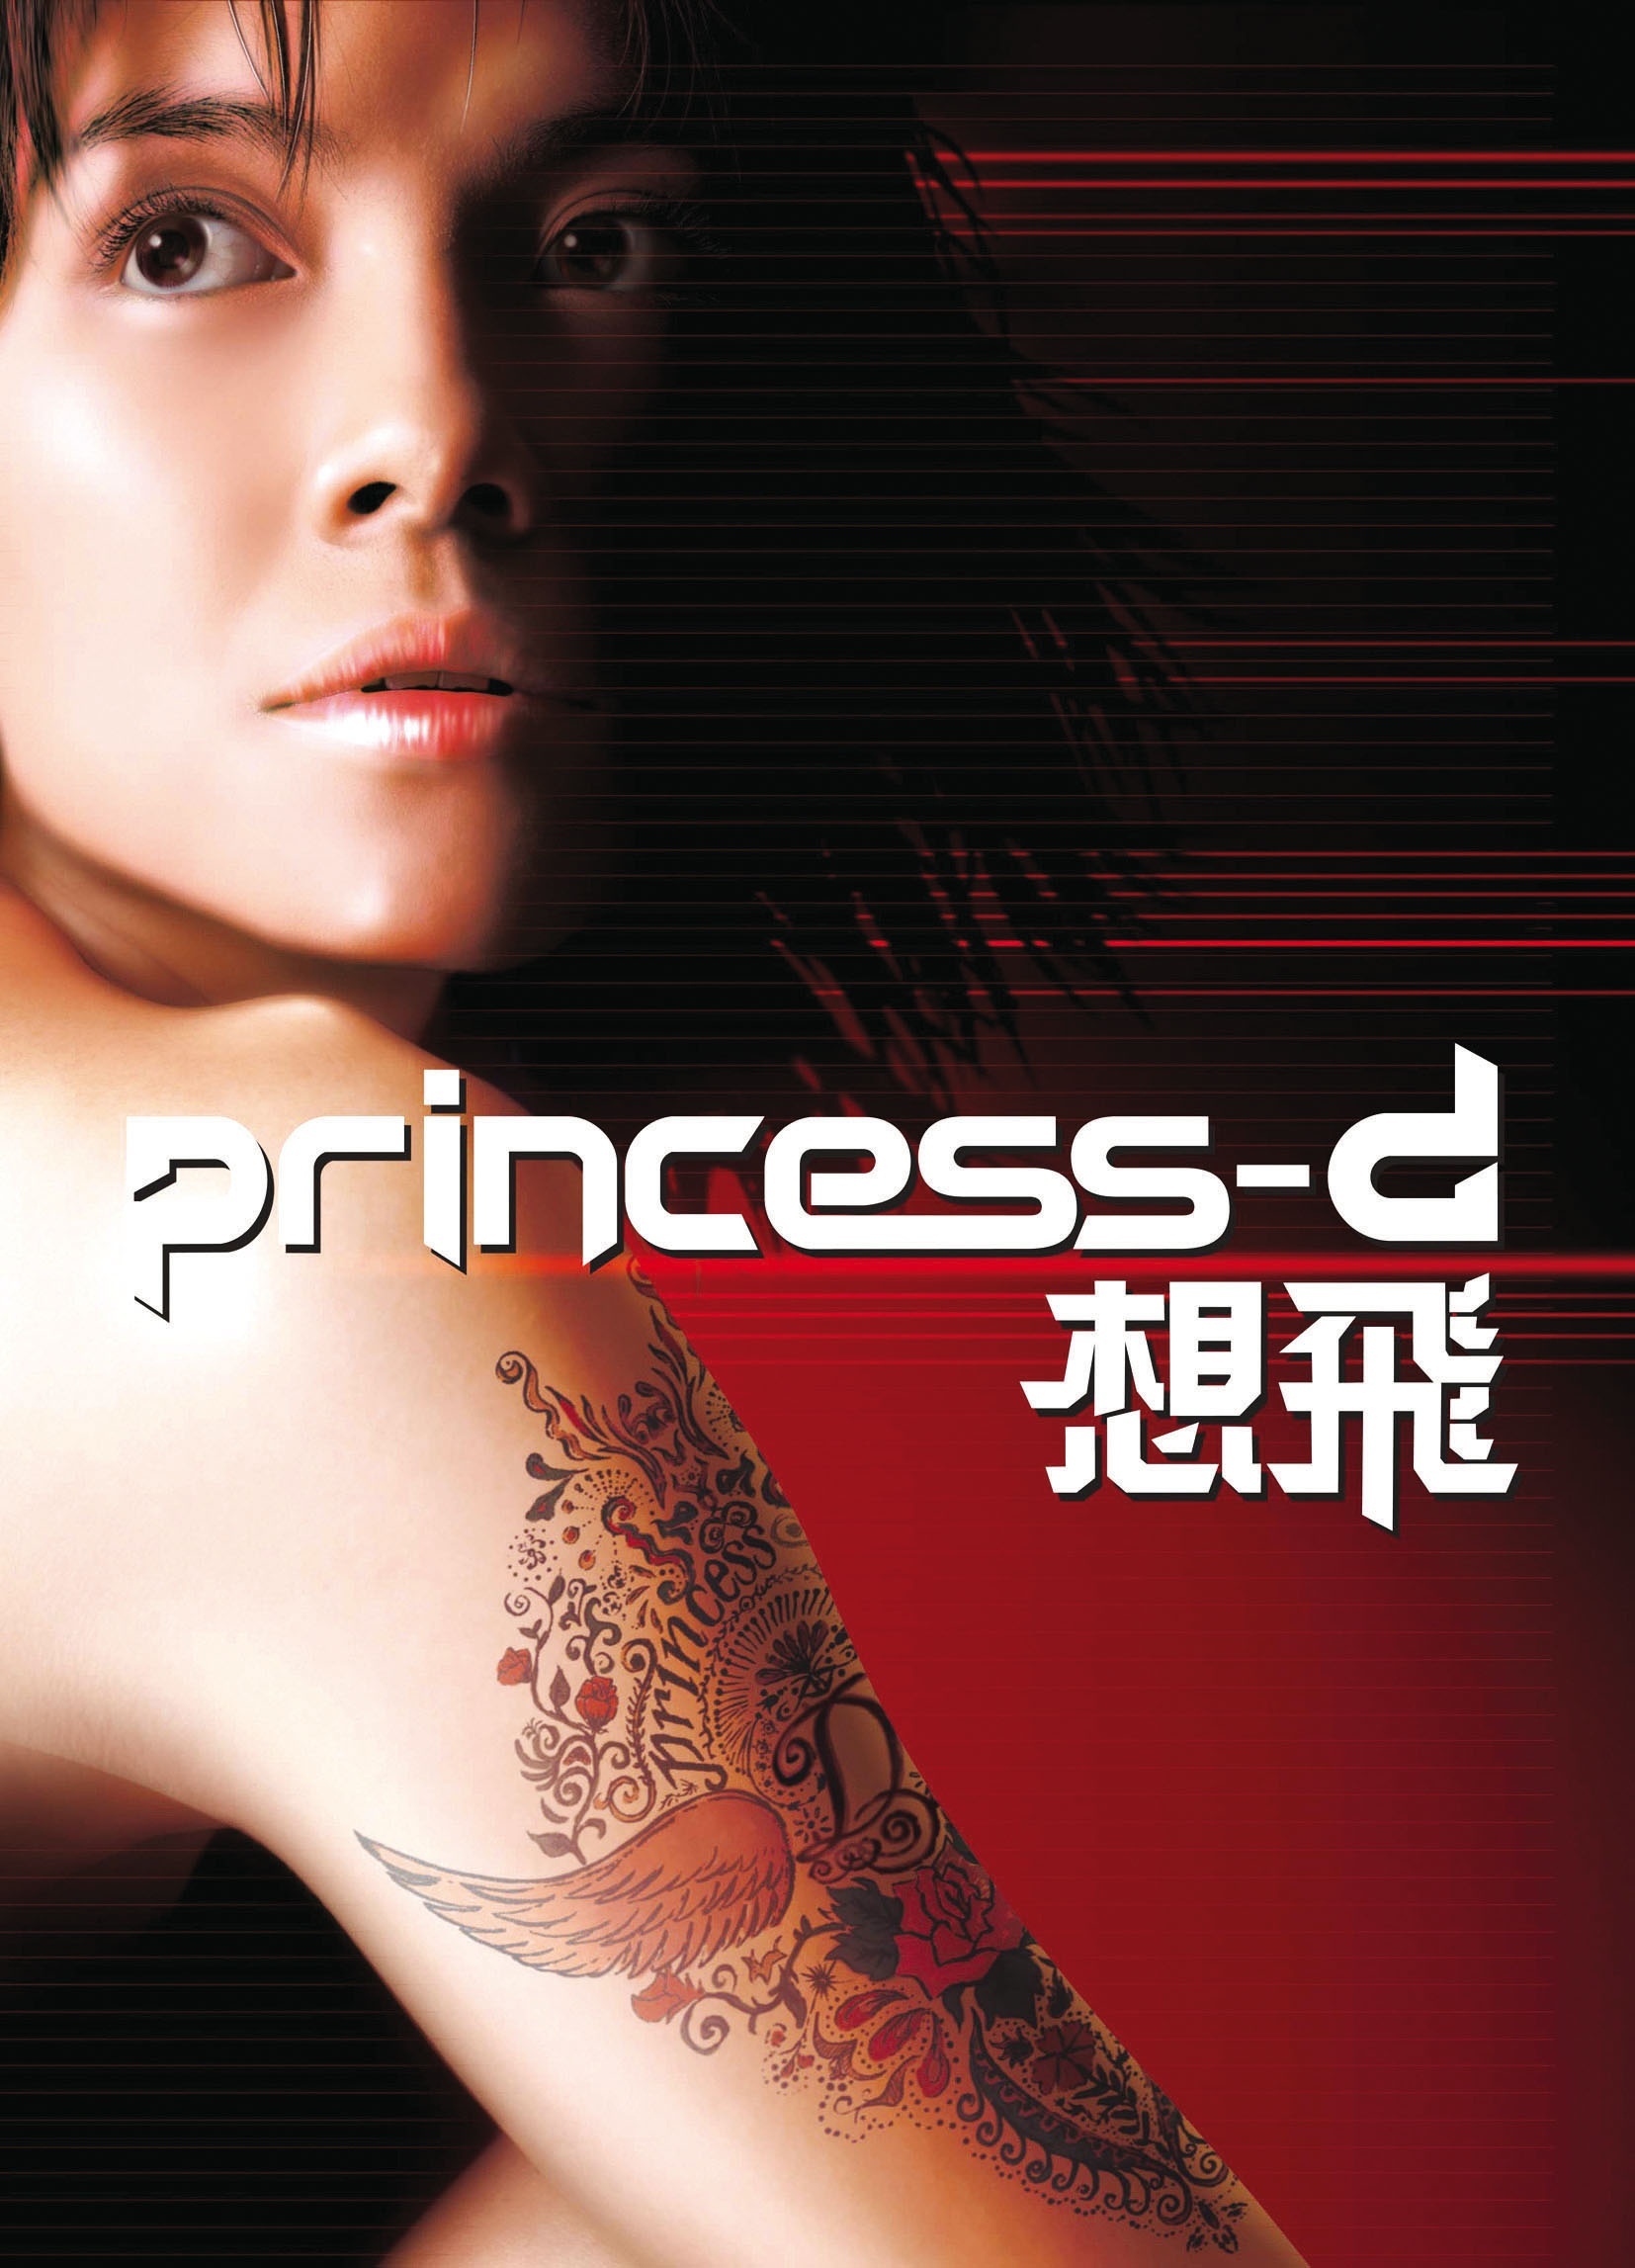 Princess D (2002) Screenshot 1 